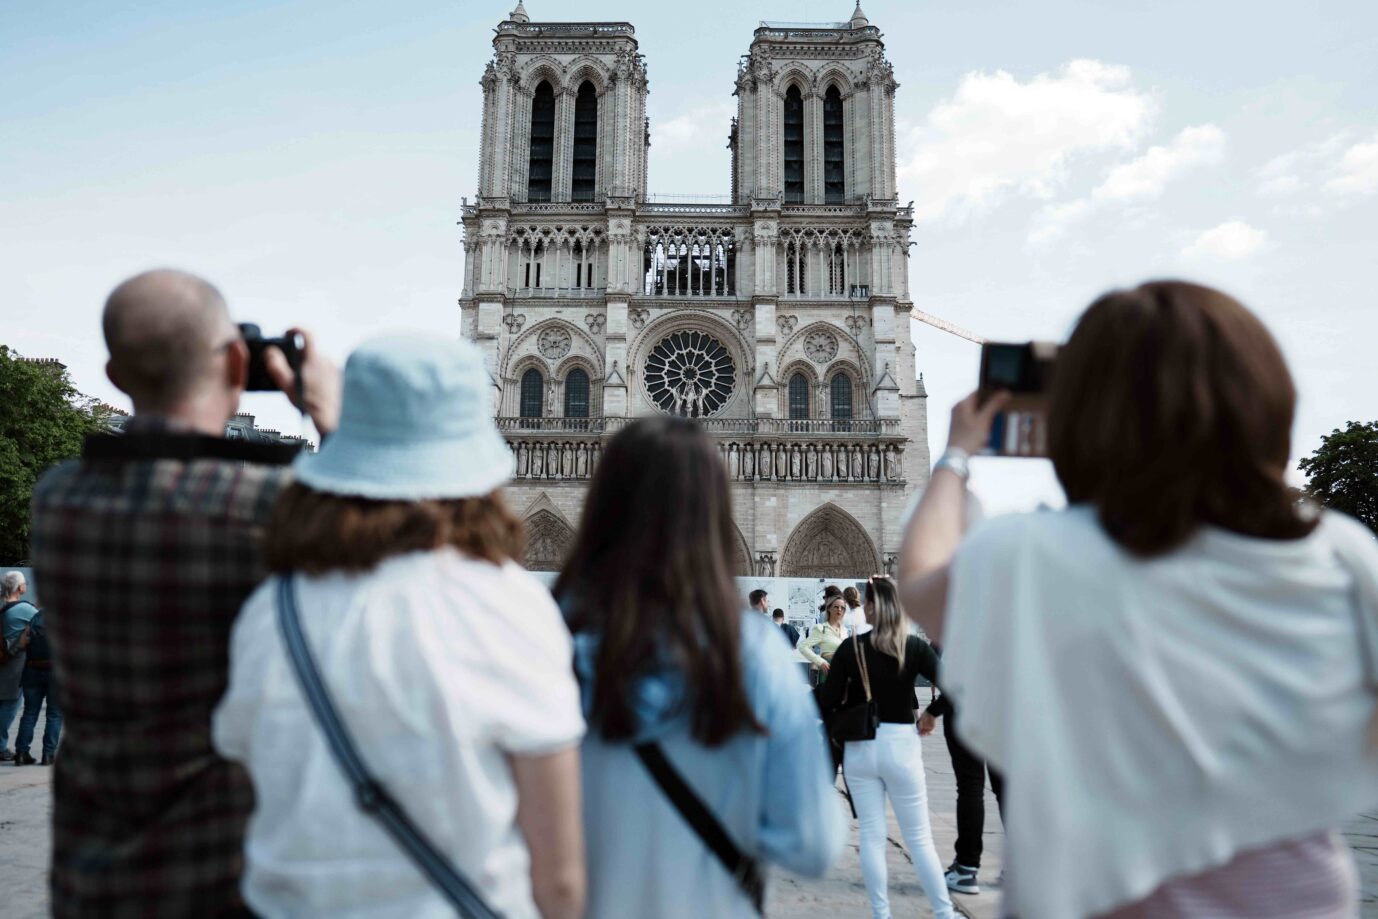 Touristen machen von der Kathedrale von Notre Dame Fotos Die Kirche ist eines der bekanntesten Wahrzeichen Europas